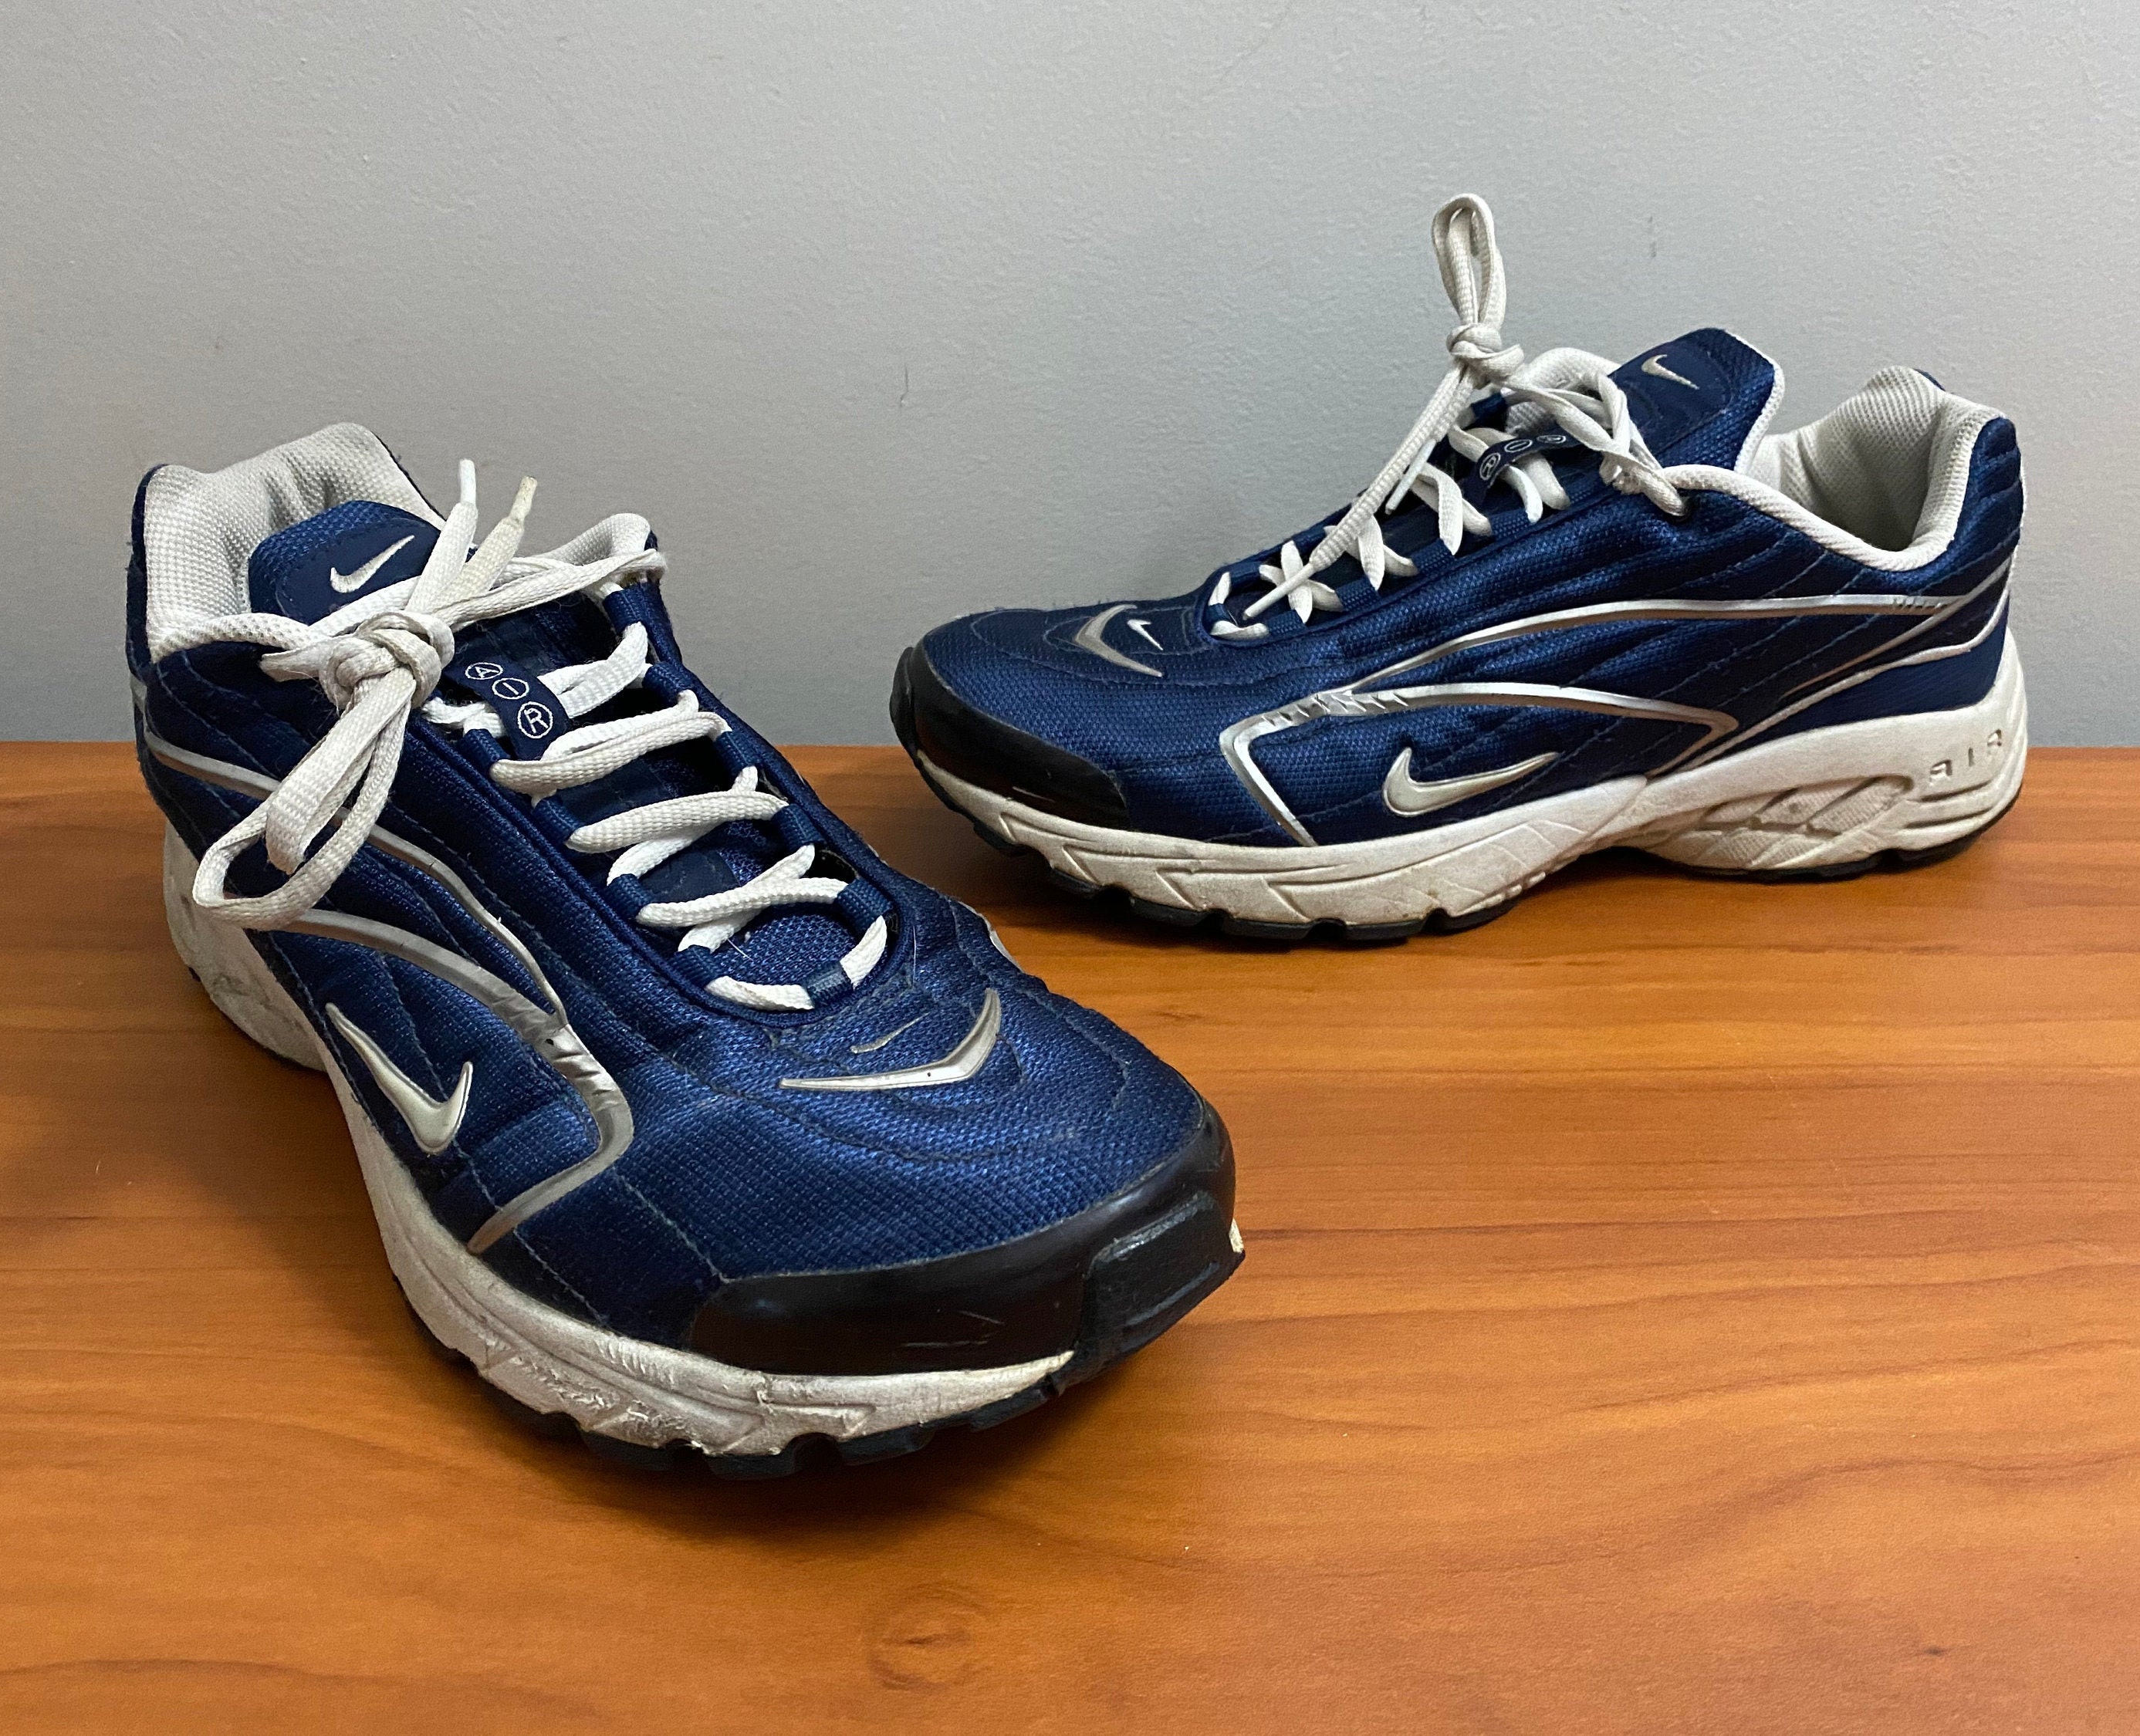 Obstinado Favor Usual 2001 Nike Air zapatillas de deporte talla de hombre 11 azul - Etsy España